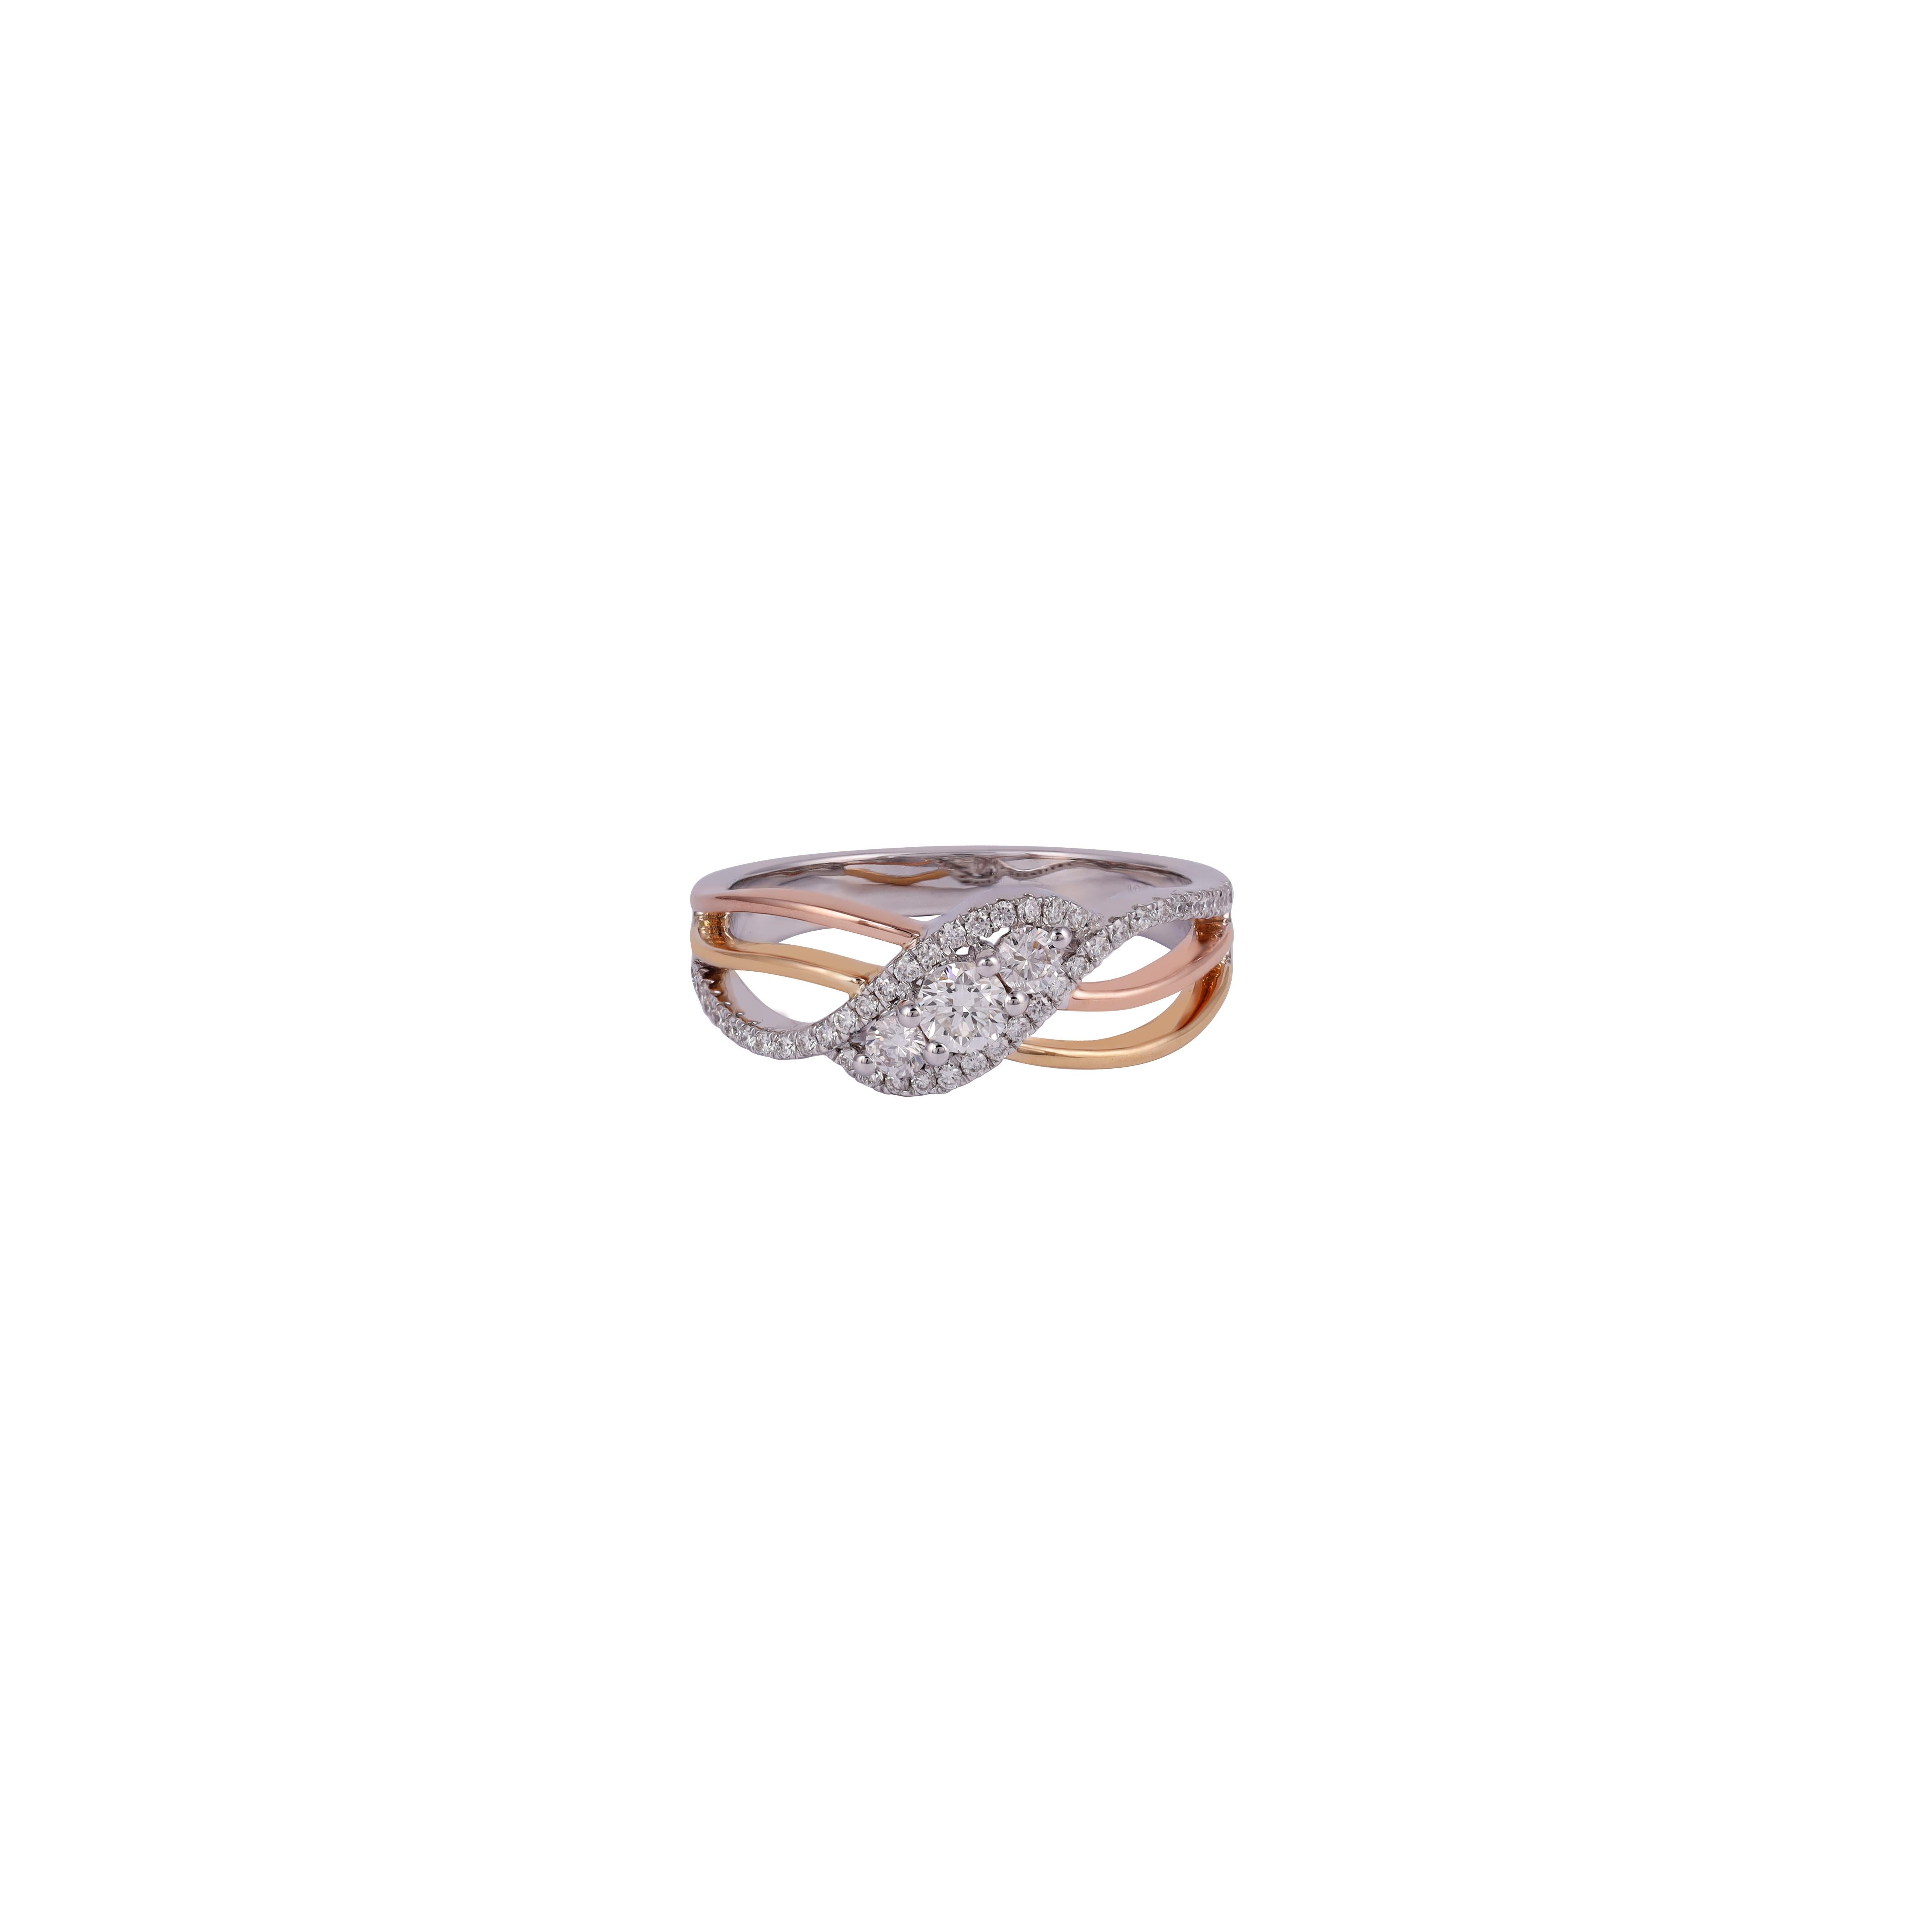 Diamond Ring Studded in 18 Karat White Gold

Diamond - 0.53 Carat
18Kt White Rose Yellow Gold.
